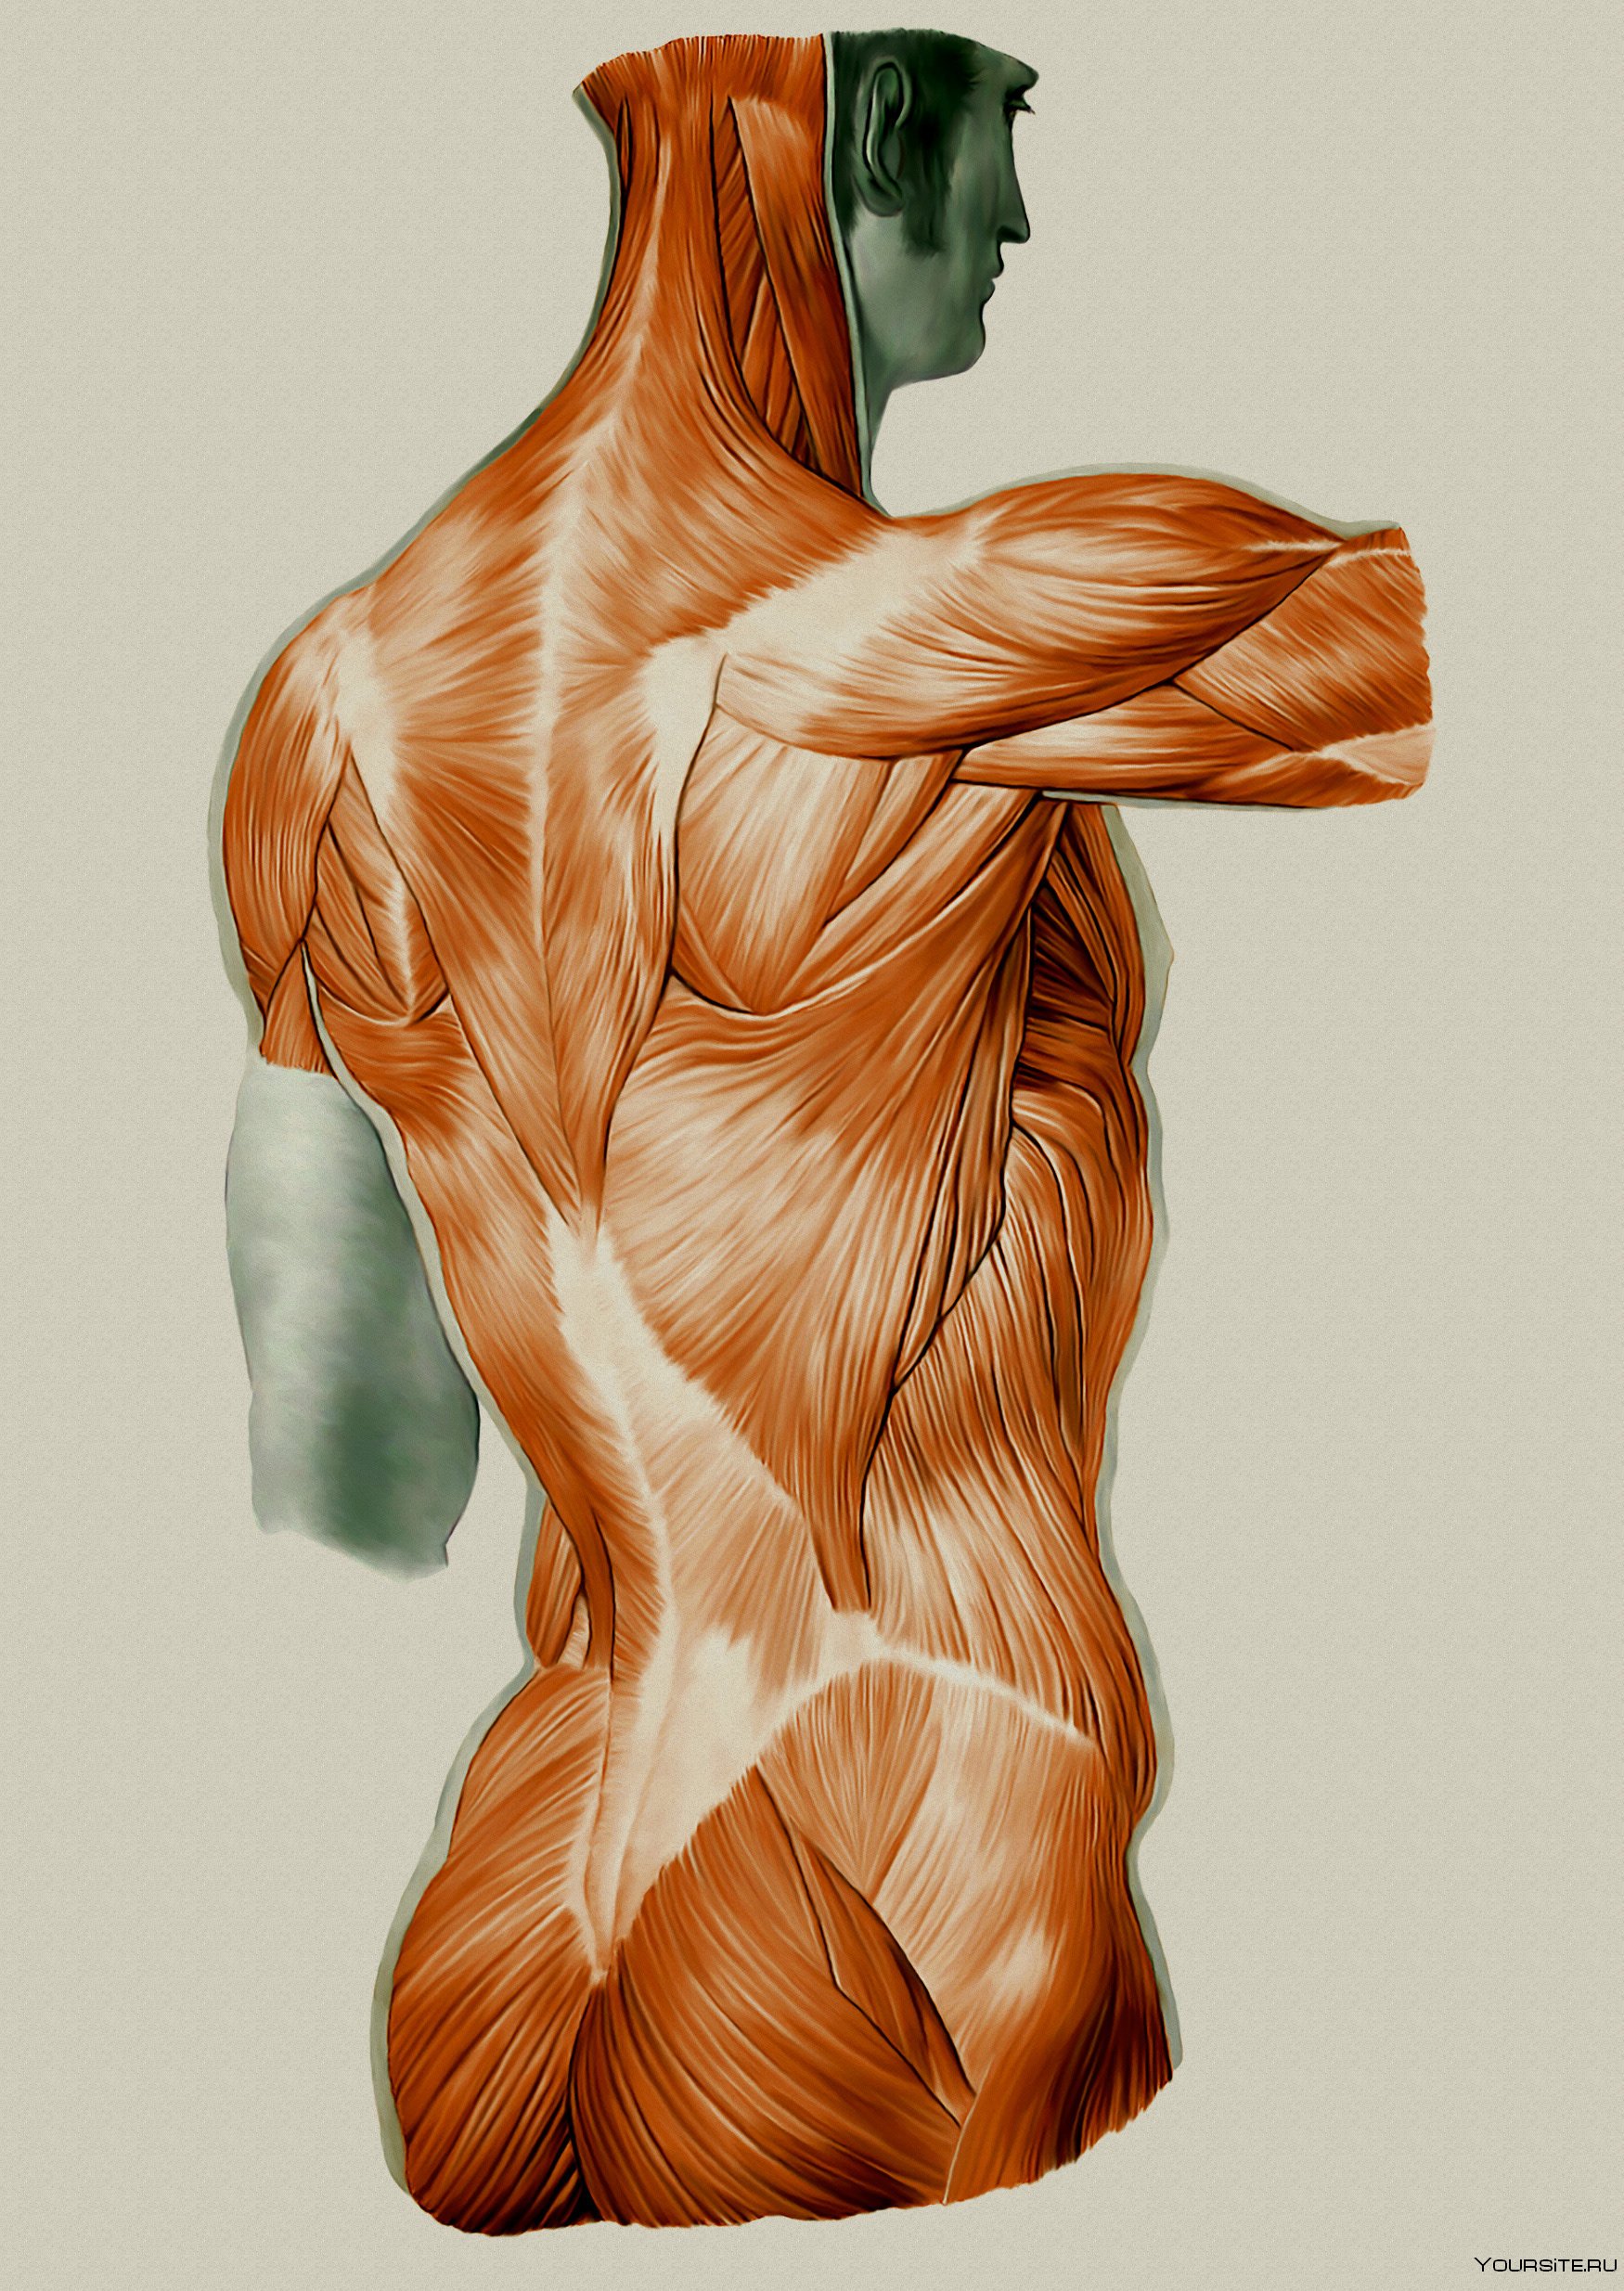 Мышцы картинка. Мышцы человека. Анатомия мышц. Мышечный каркас. Мускулатура человека.